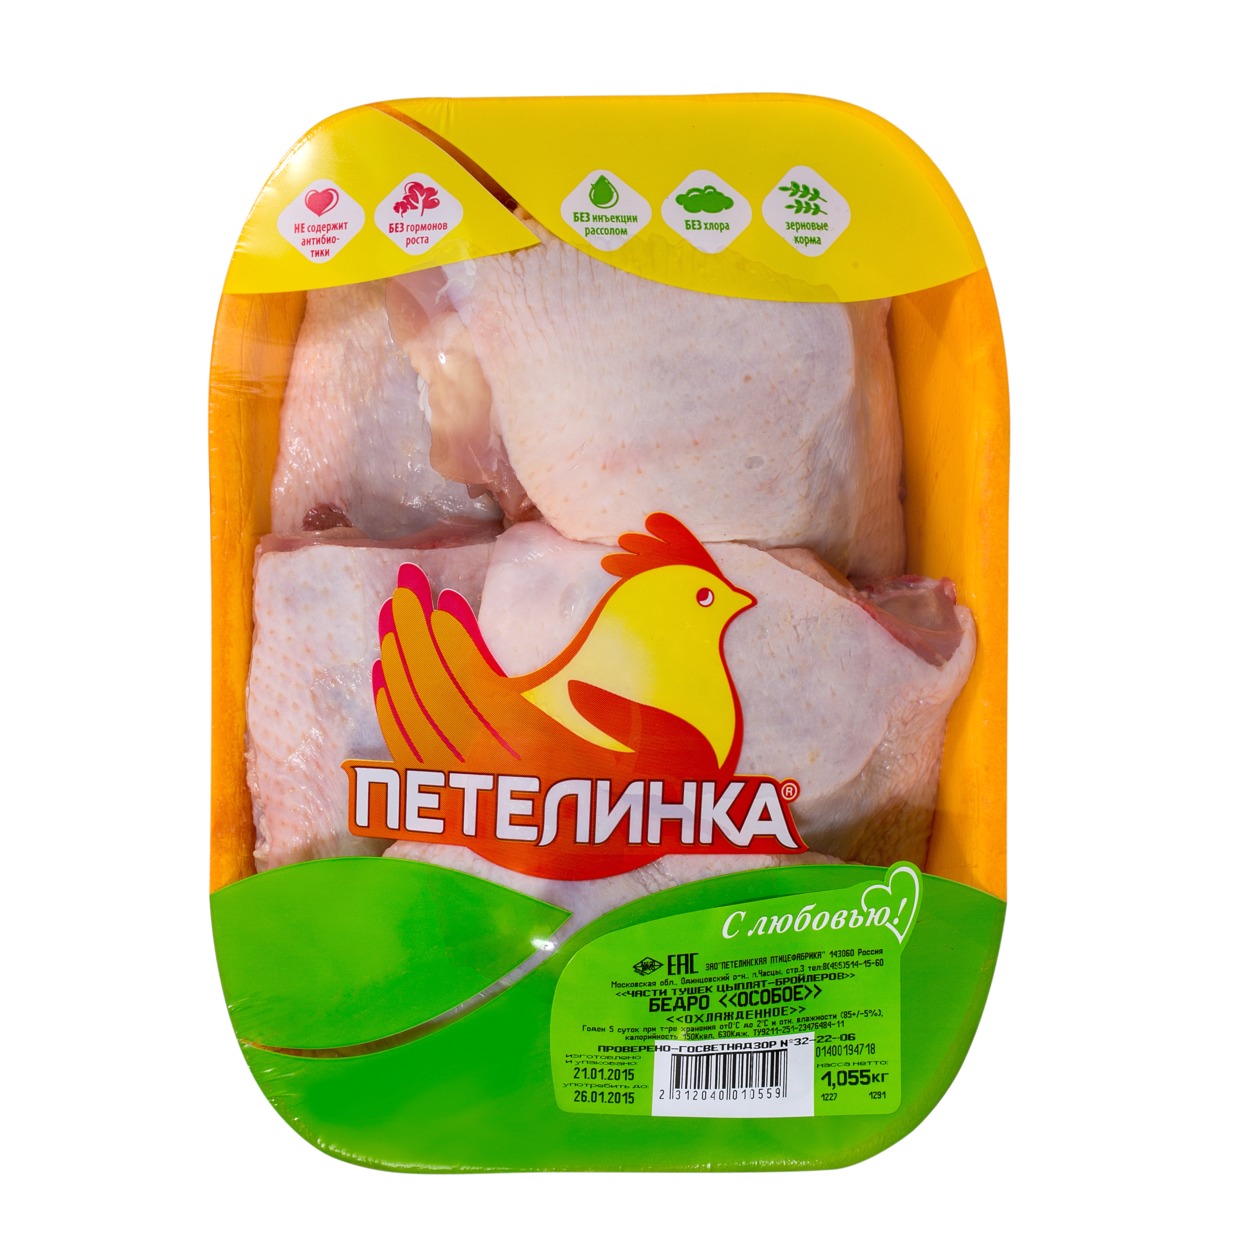 Бедро цыпленка, особое, охлажденное, Петелинка, 1 кг